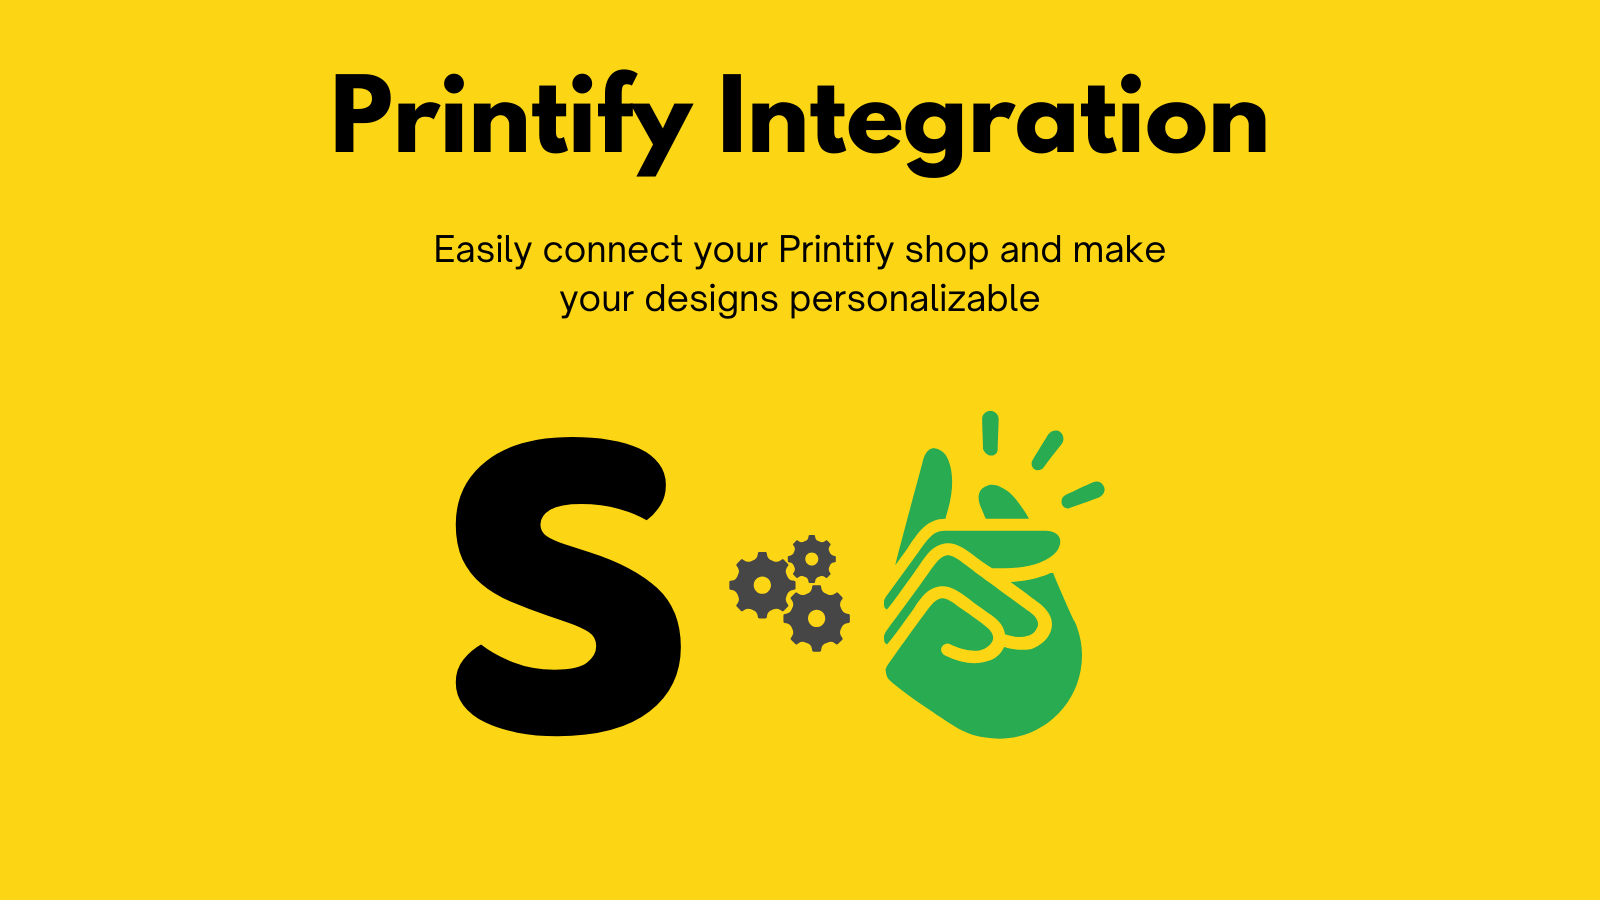 Printify-integratie met behulp van SnapArt voor aangepaste bestellingen